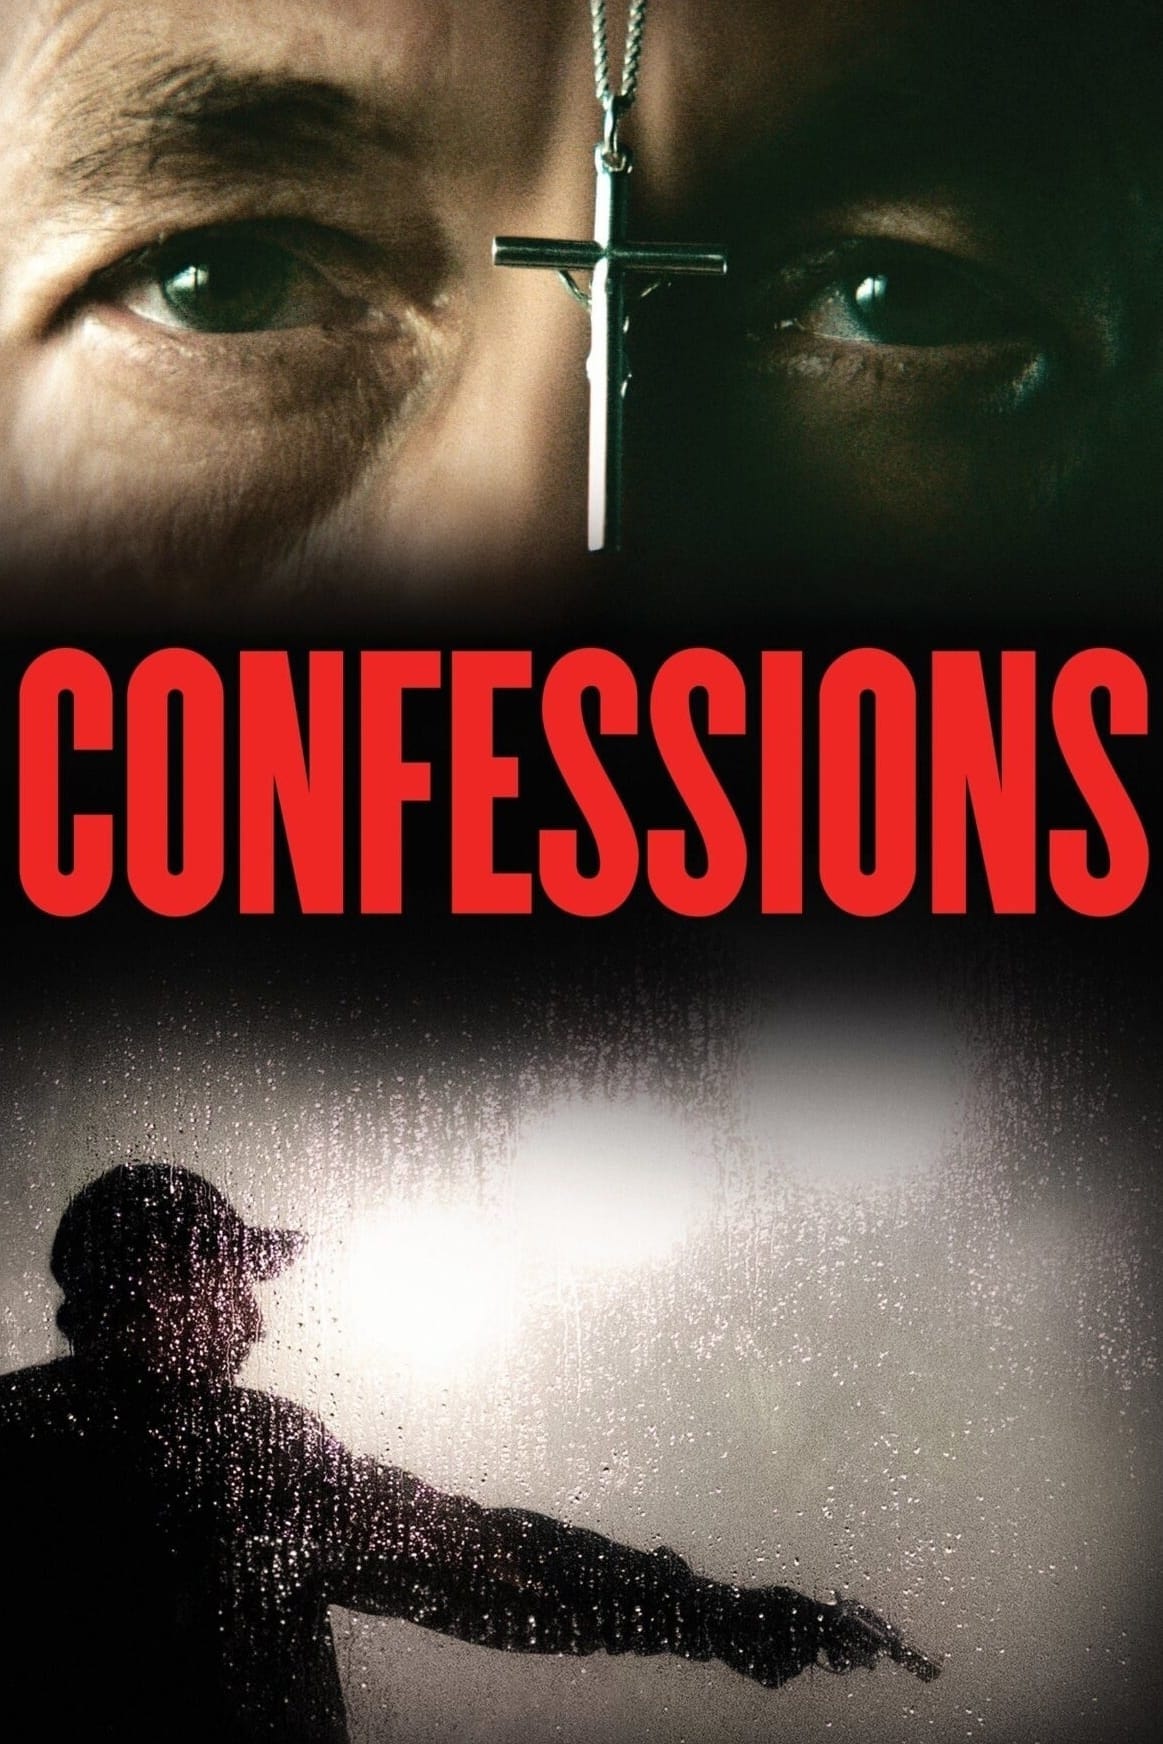 Confesiones de un asesino a sueldo